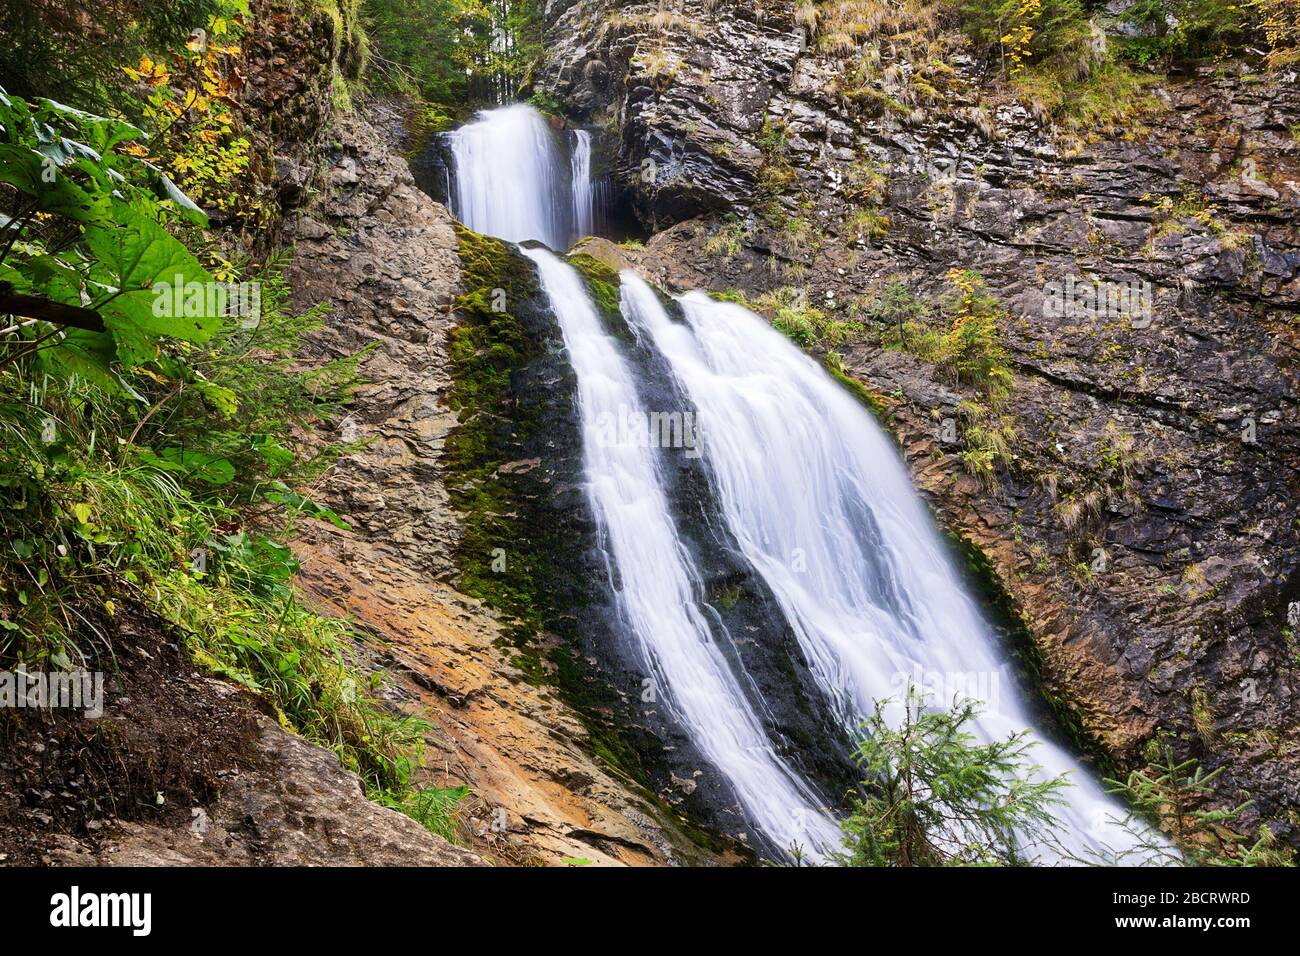 gros plan de la cascade de voile de la mariée, Rachitele, Apuseni montagnes, Roumanie; c'est un point de repère pour les touristes dans le secteur, un grand et beau cas naturel Banque D'Images